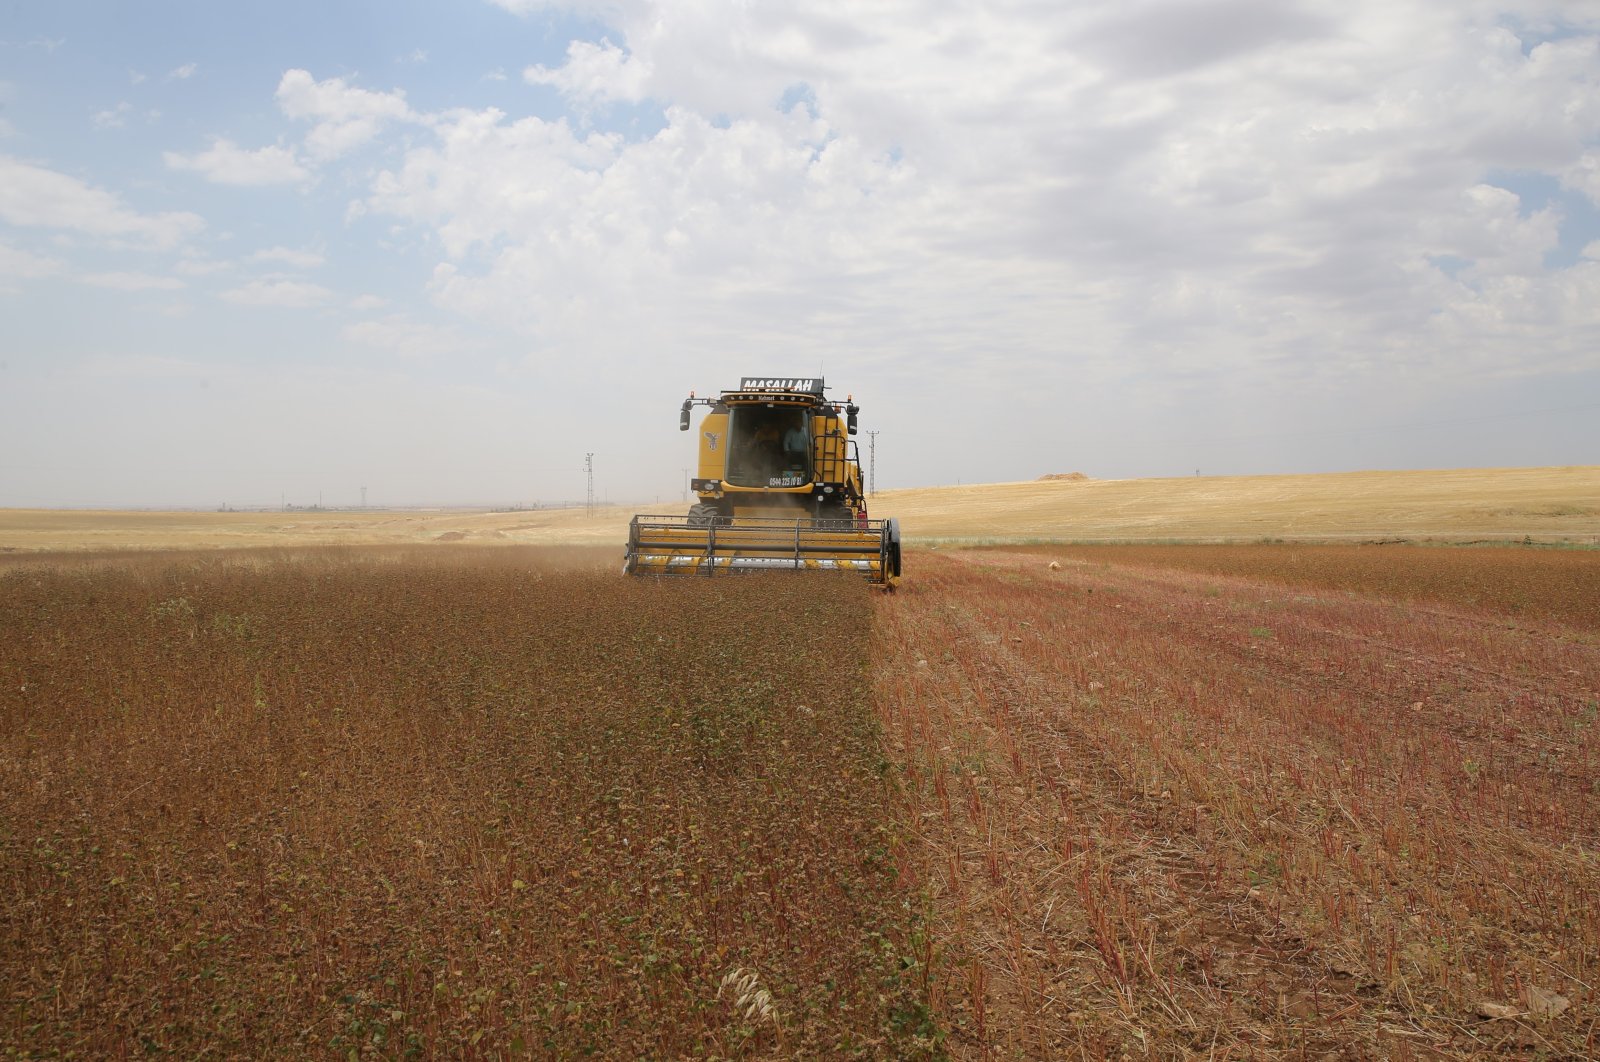 A worker harvests the buckwheat field in Mardin, southeastern Turkey, June 29, 2022. (AA PHOTO)